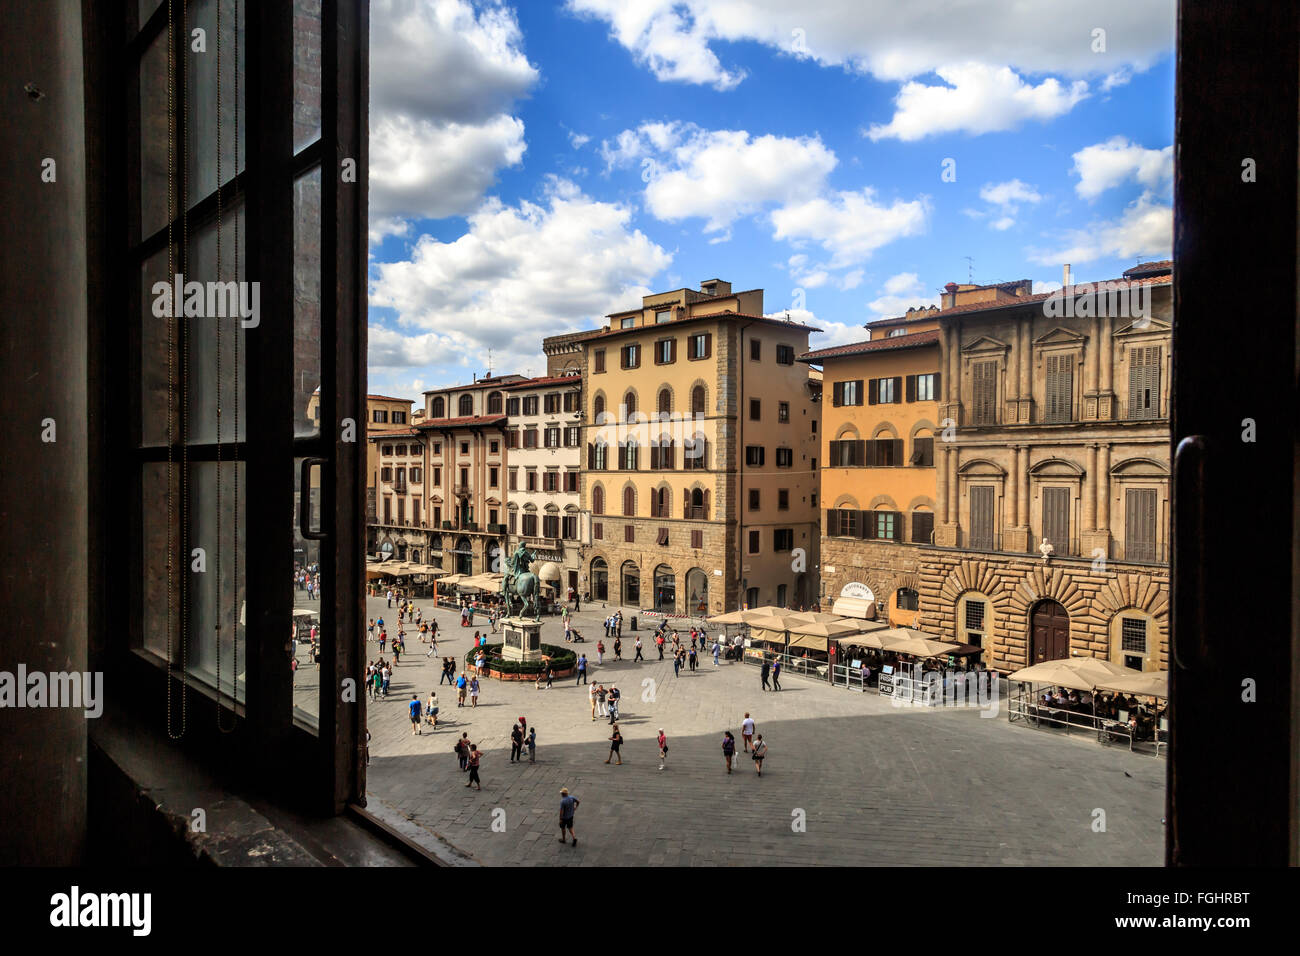 Florencia, Italia - 22 de septiembre de 2015 : vista de la Piazza Della Signoria de Florencia, con la gente y esculturas alrededor. Foto de stock